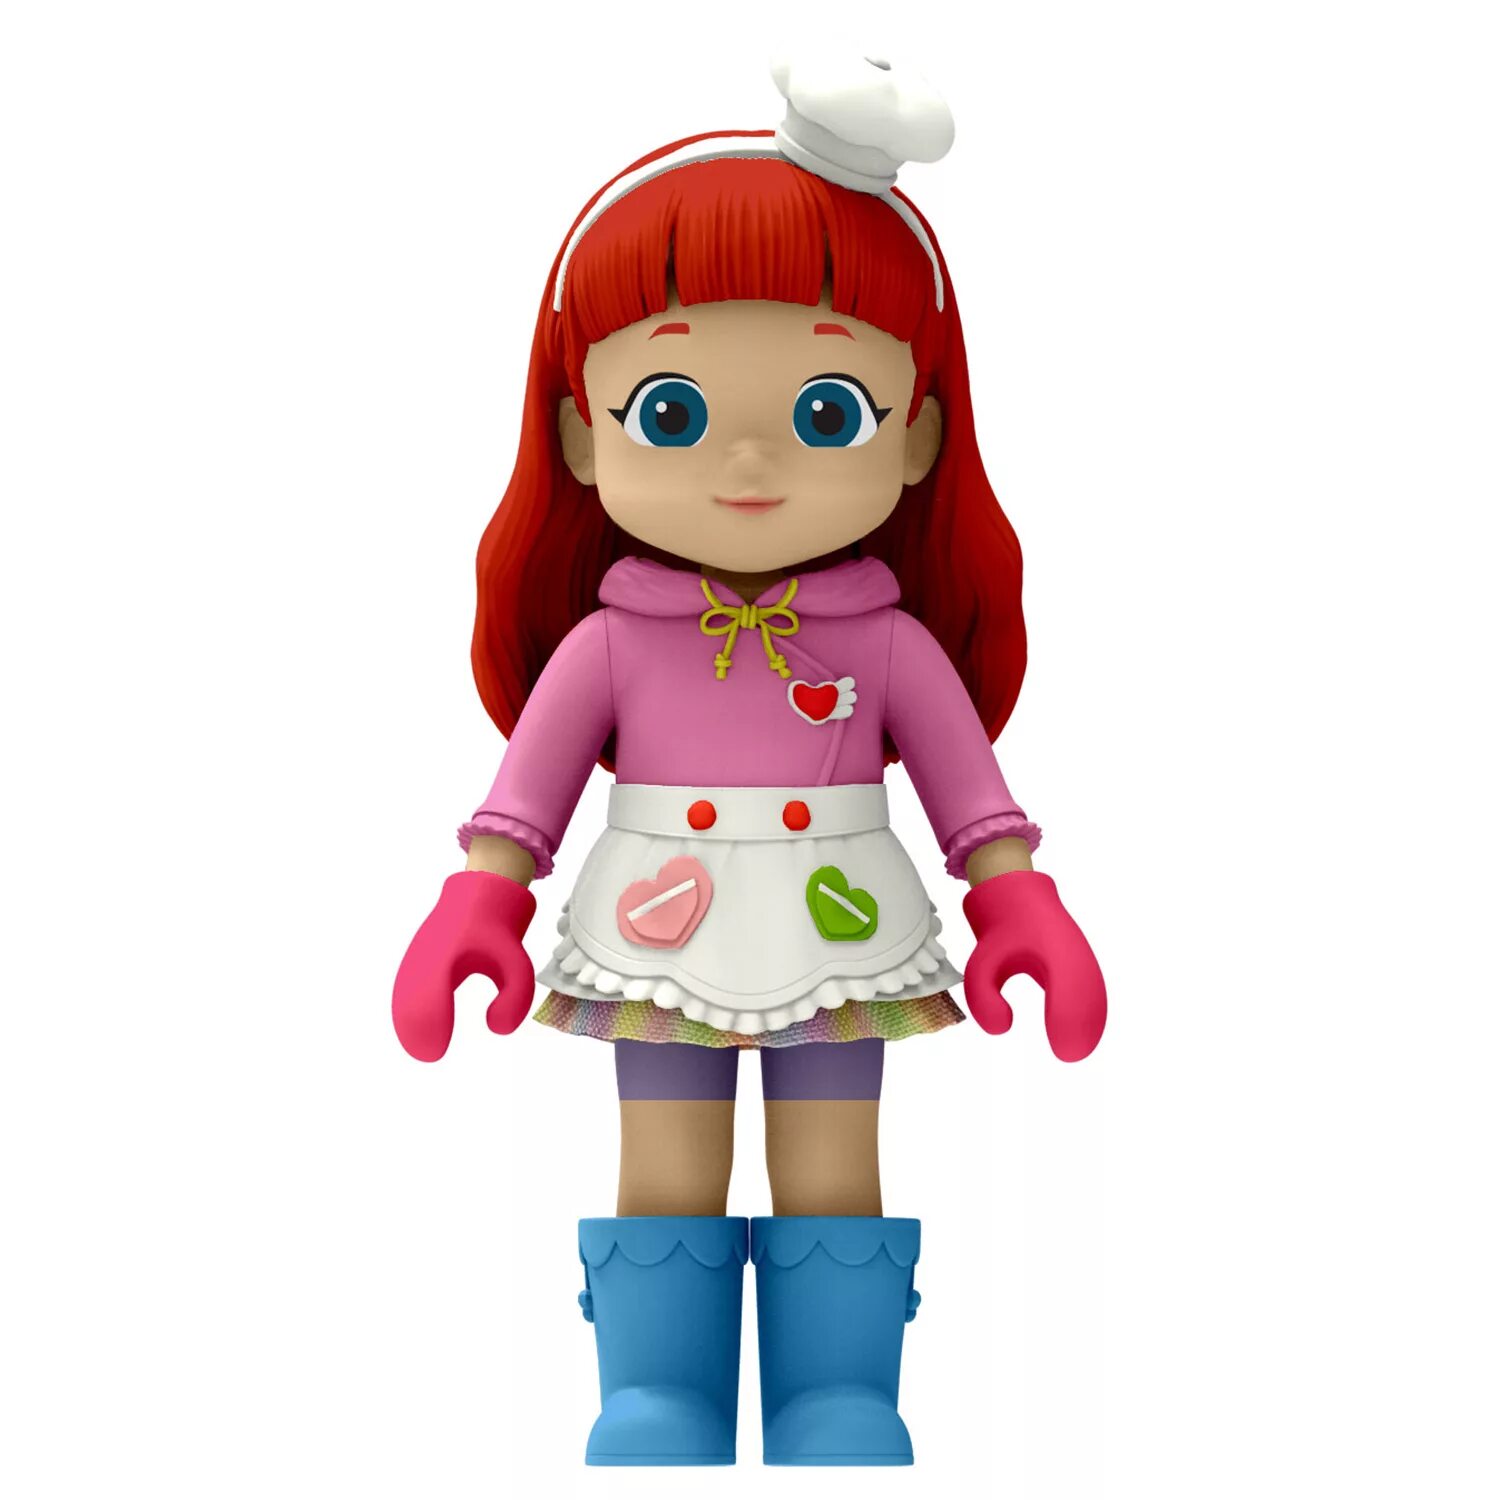 Кукла Rainbow Ruby Руби доктор. Фигурка Rainbow Ruby. Rainbow Ruby фигурка Руби шеф-повар. Фигурка Руби парикмахер. Маленькая руби